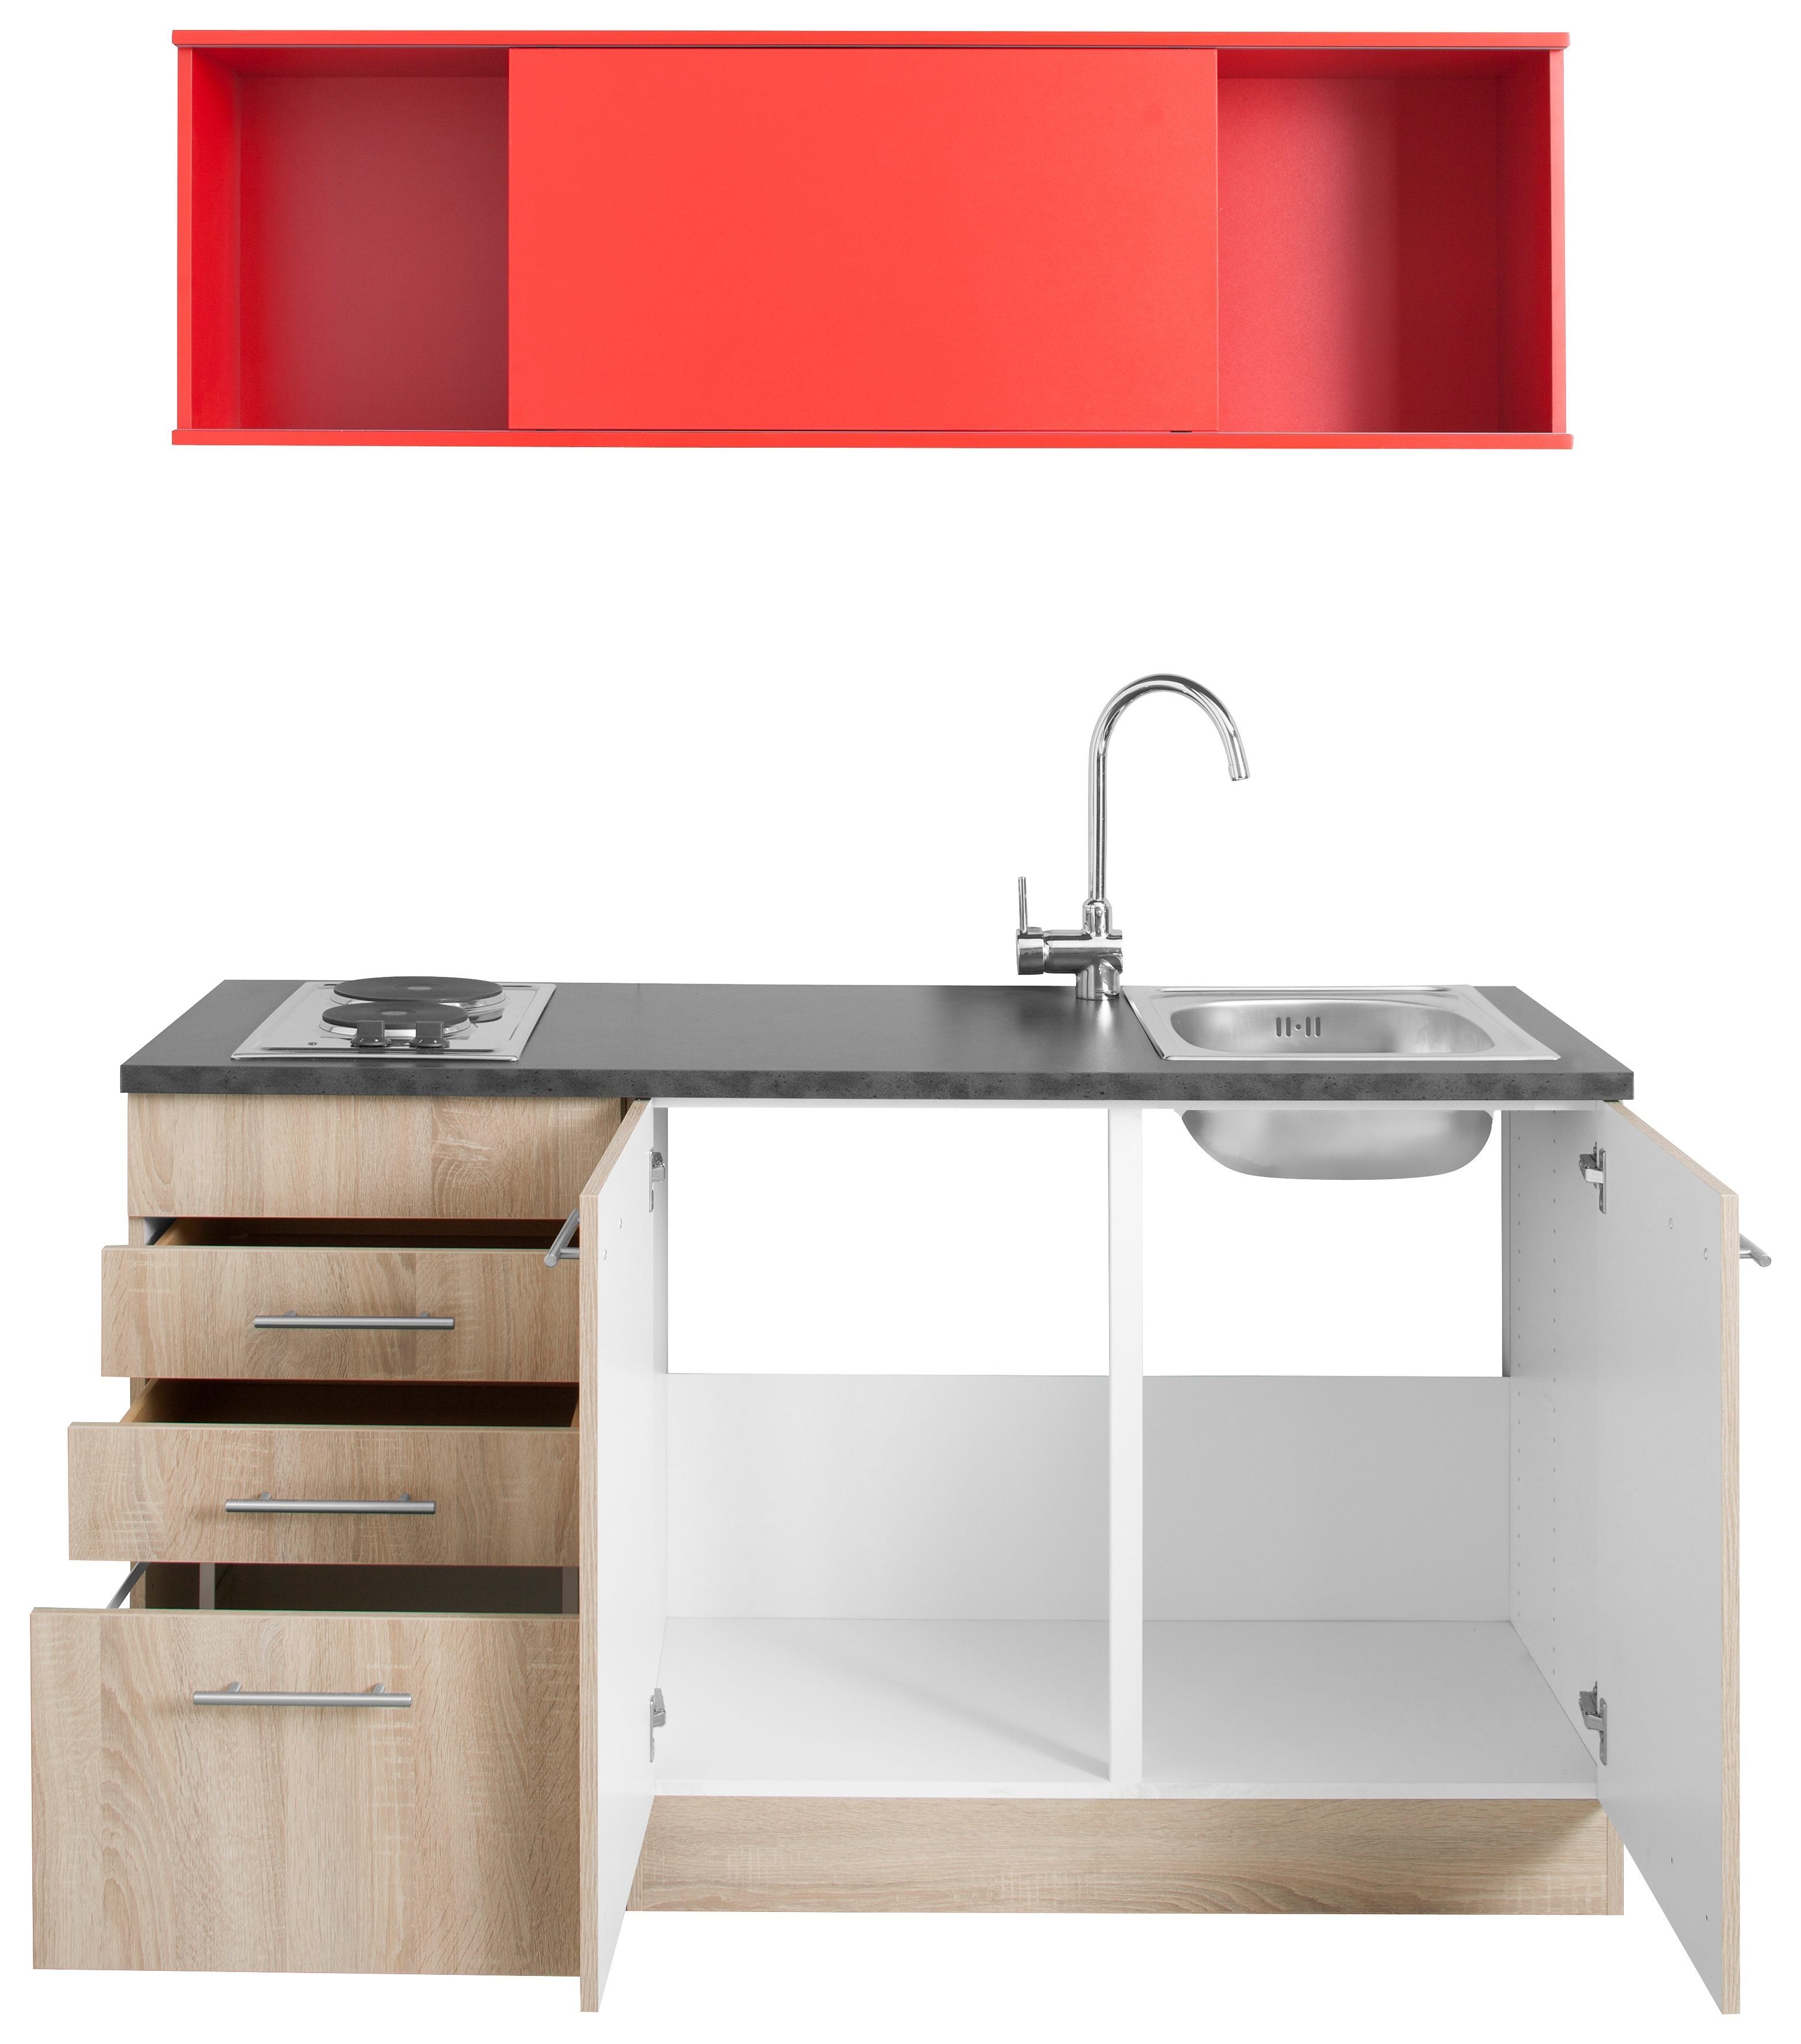 OPTIFIT Küchenzeile Mini, mit E-Geräten, eichefarben 150 cm Breite eichefarben/rot/anthrazit 